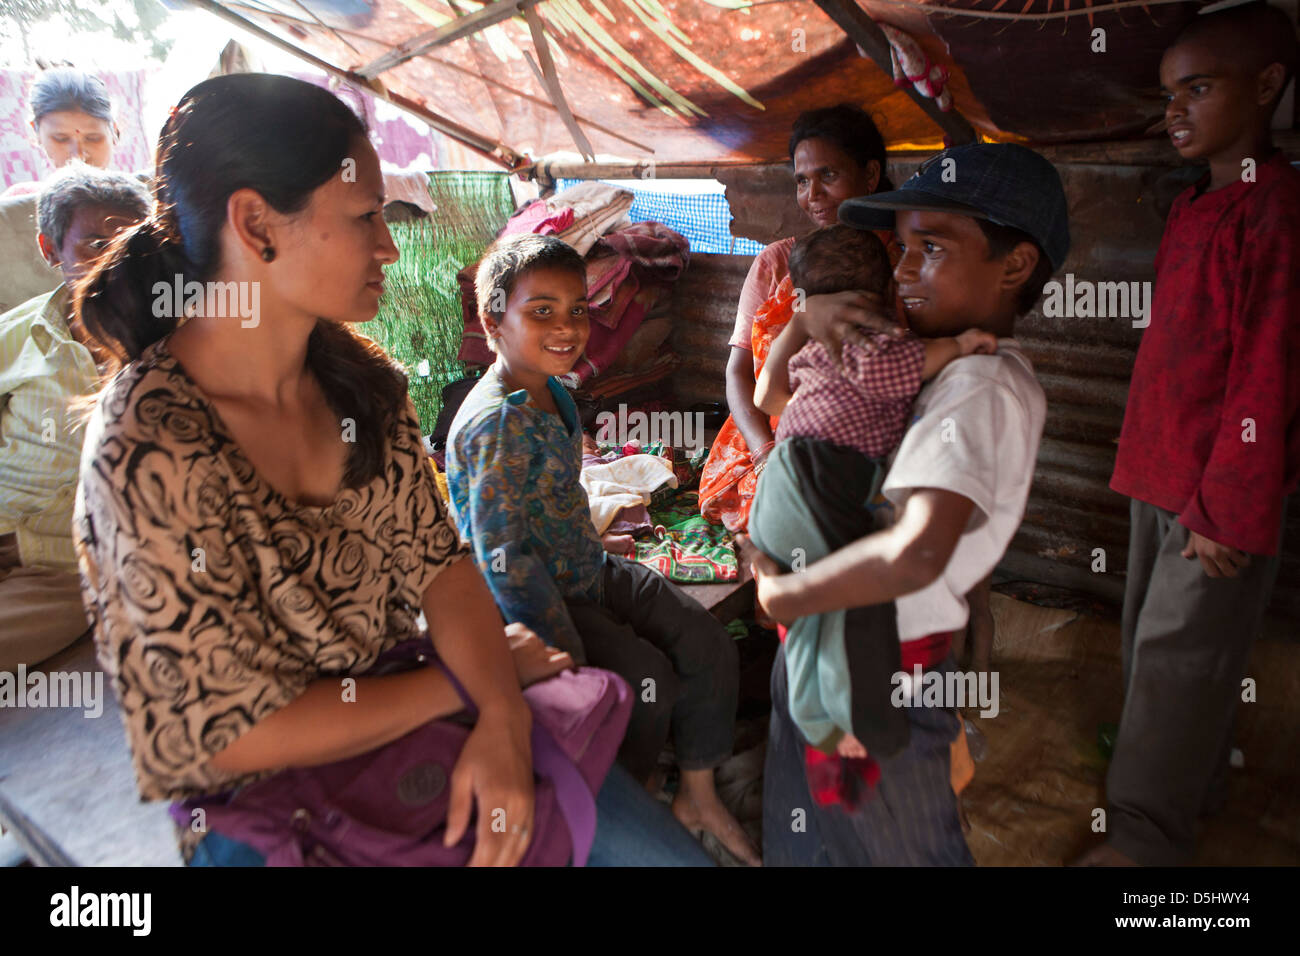 Nepalesischen junge hält eines seiner Geschwister, wie er zu einem Charity-Besucher zu Hause im Slum im Kankeshori Gebiet von Kathmandu, Nepal spricht. Stockfoto